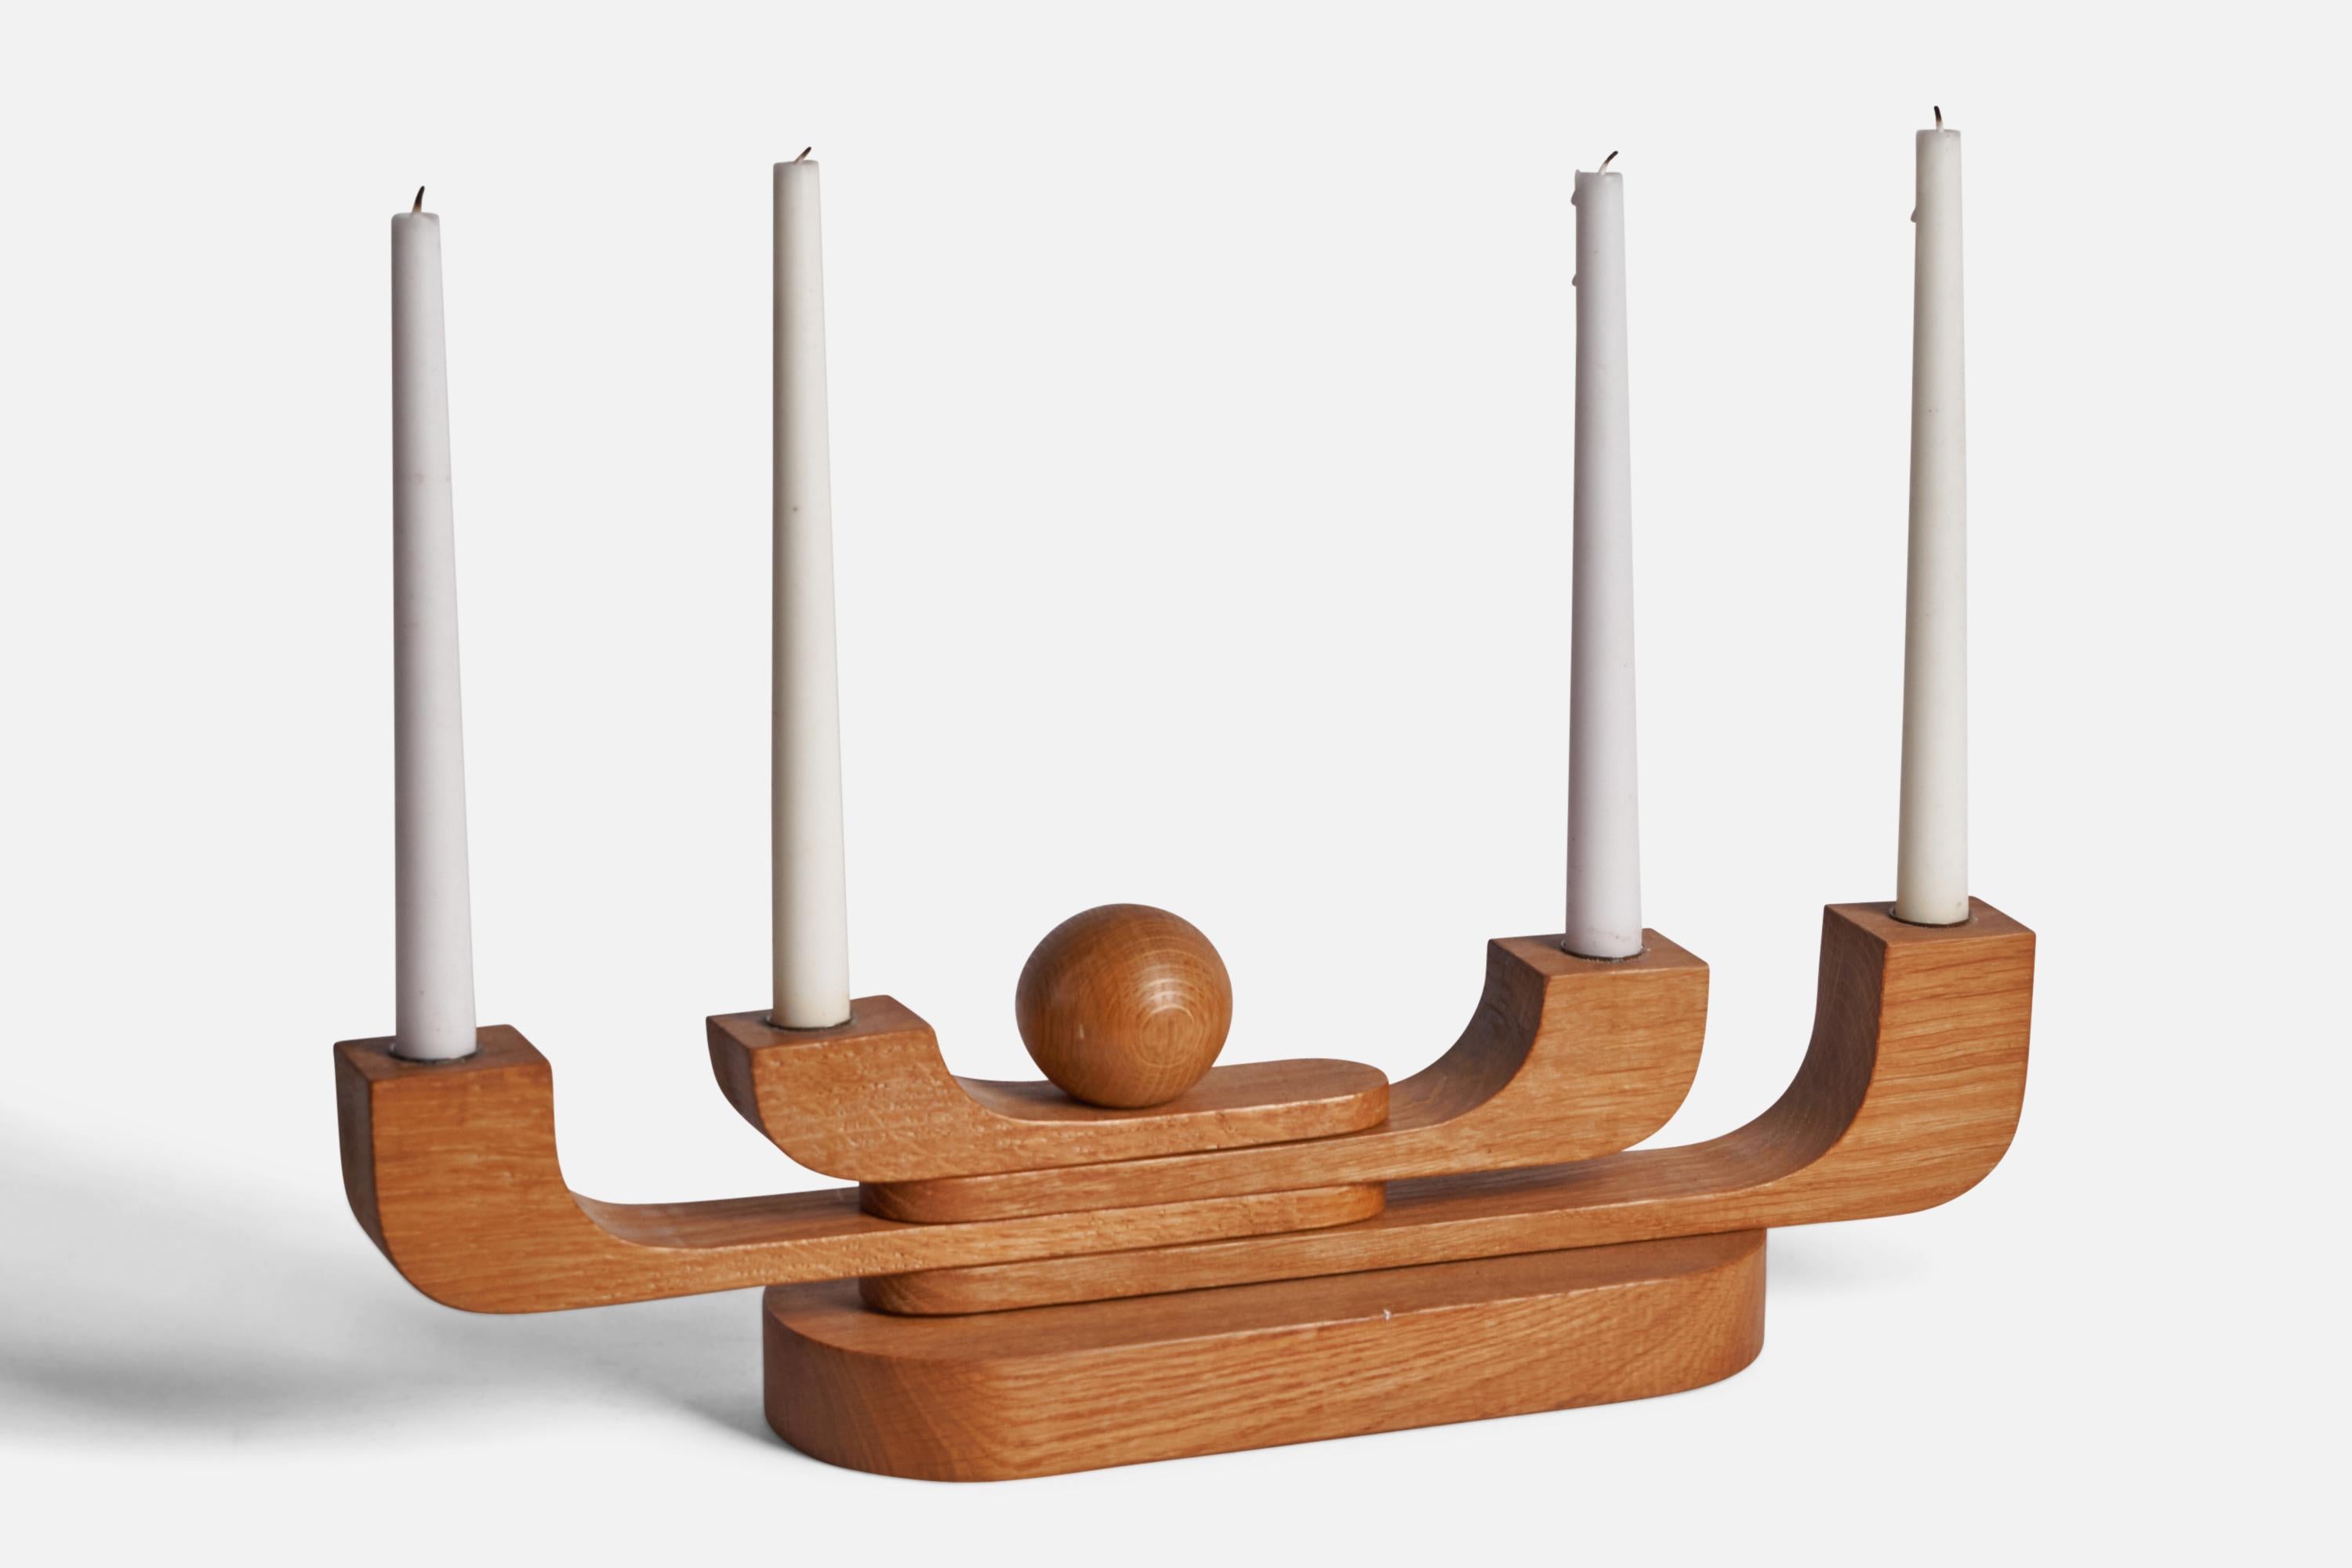 Verstellbarer Kandelaber aus Eiche, entworfen und hergestellt in Schweden, ca. 1950er Jahre.

Hält Kerzen mit einem Durchmesser von 0.76